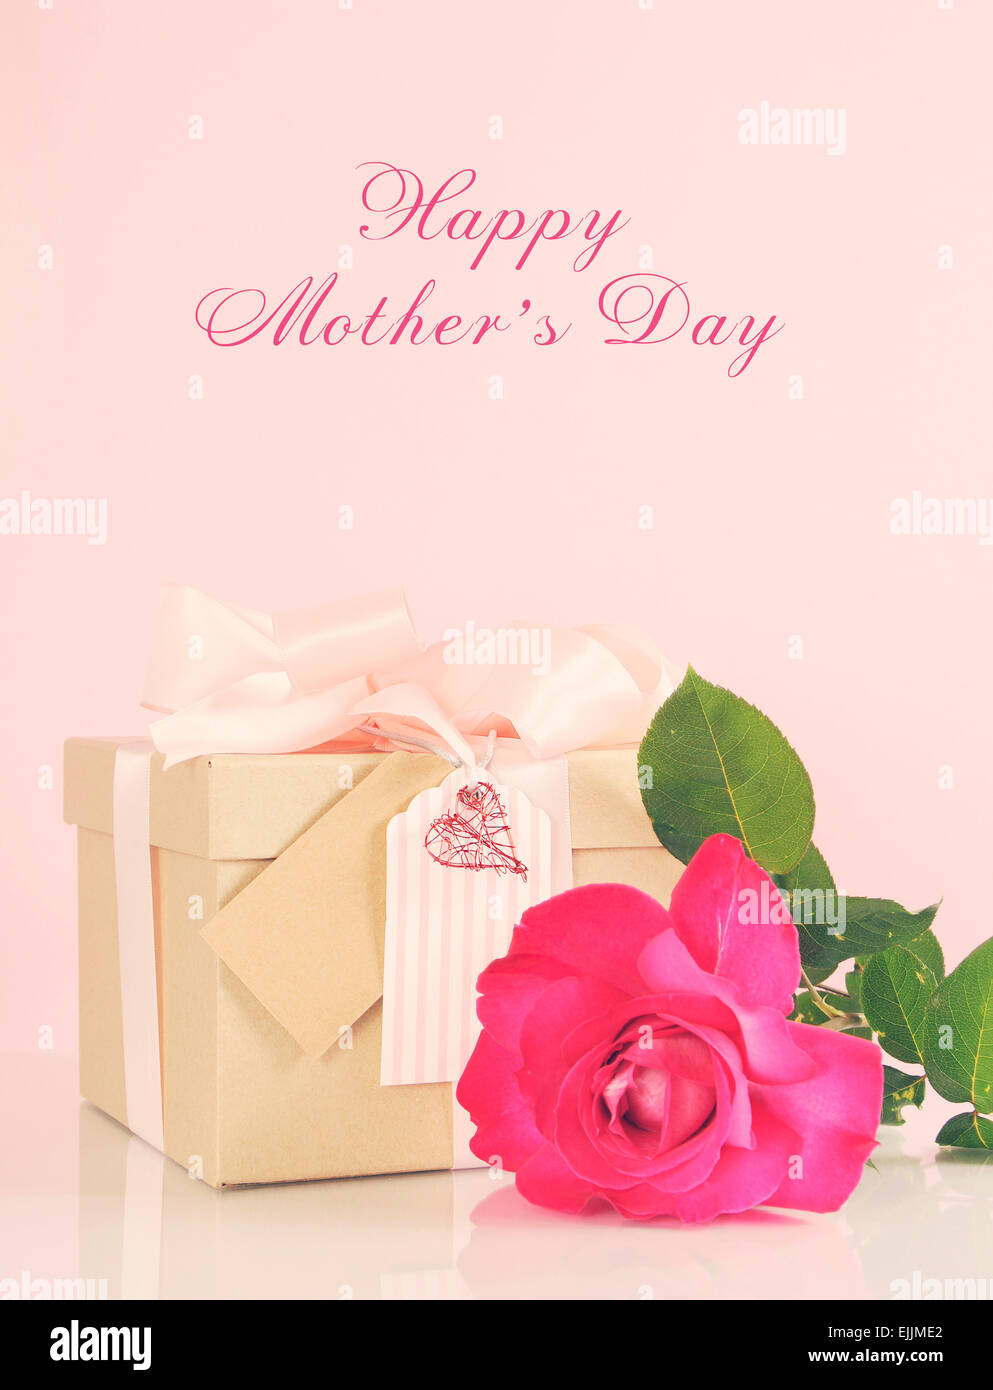 Glücklich Muttertag Geschenk der Kraft Papier Geschenk box mit einem rosa  Rose und Retro-Vintage-Stil-Filter und schwaches Licht Strom angewendet  Stockfotografie - Alamy